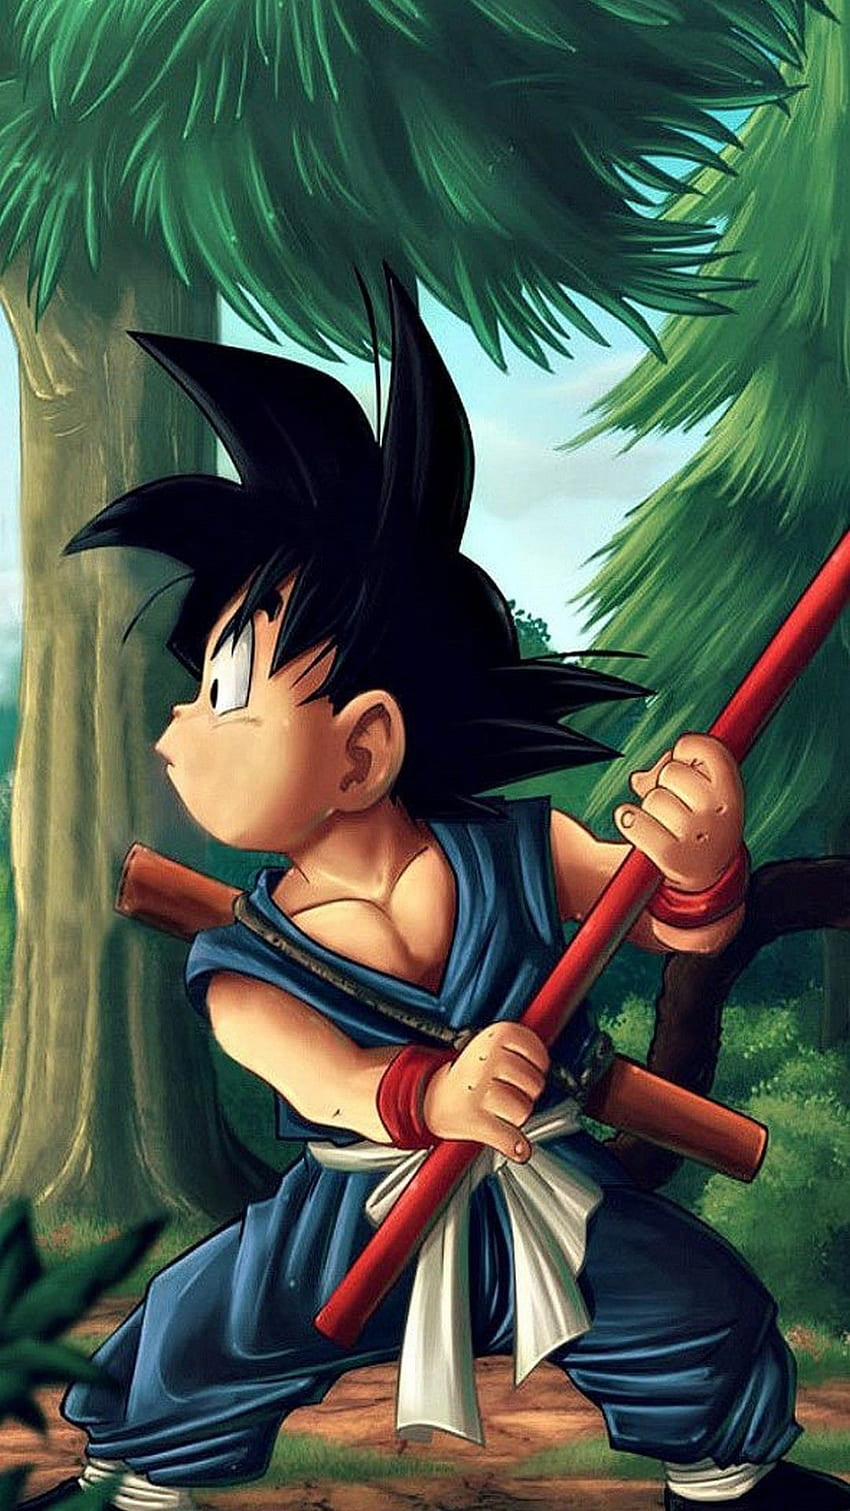 Bạn là fan của bộ truyện tranh Dragon Ball? Hãy trang trí chiếc iPhone của bạn bằng những bức ảnh về nhân vật Goku ngộ nghĩnh và đáng yêu. Hình ảnh với nhiều phong cách khác nhau sẽ giúp bạn tạo nên vẻ ngoài độc đáo và cá tính hơn. Hãy trải nghiệm cảm giác thú vị với bộ sưu tập này!